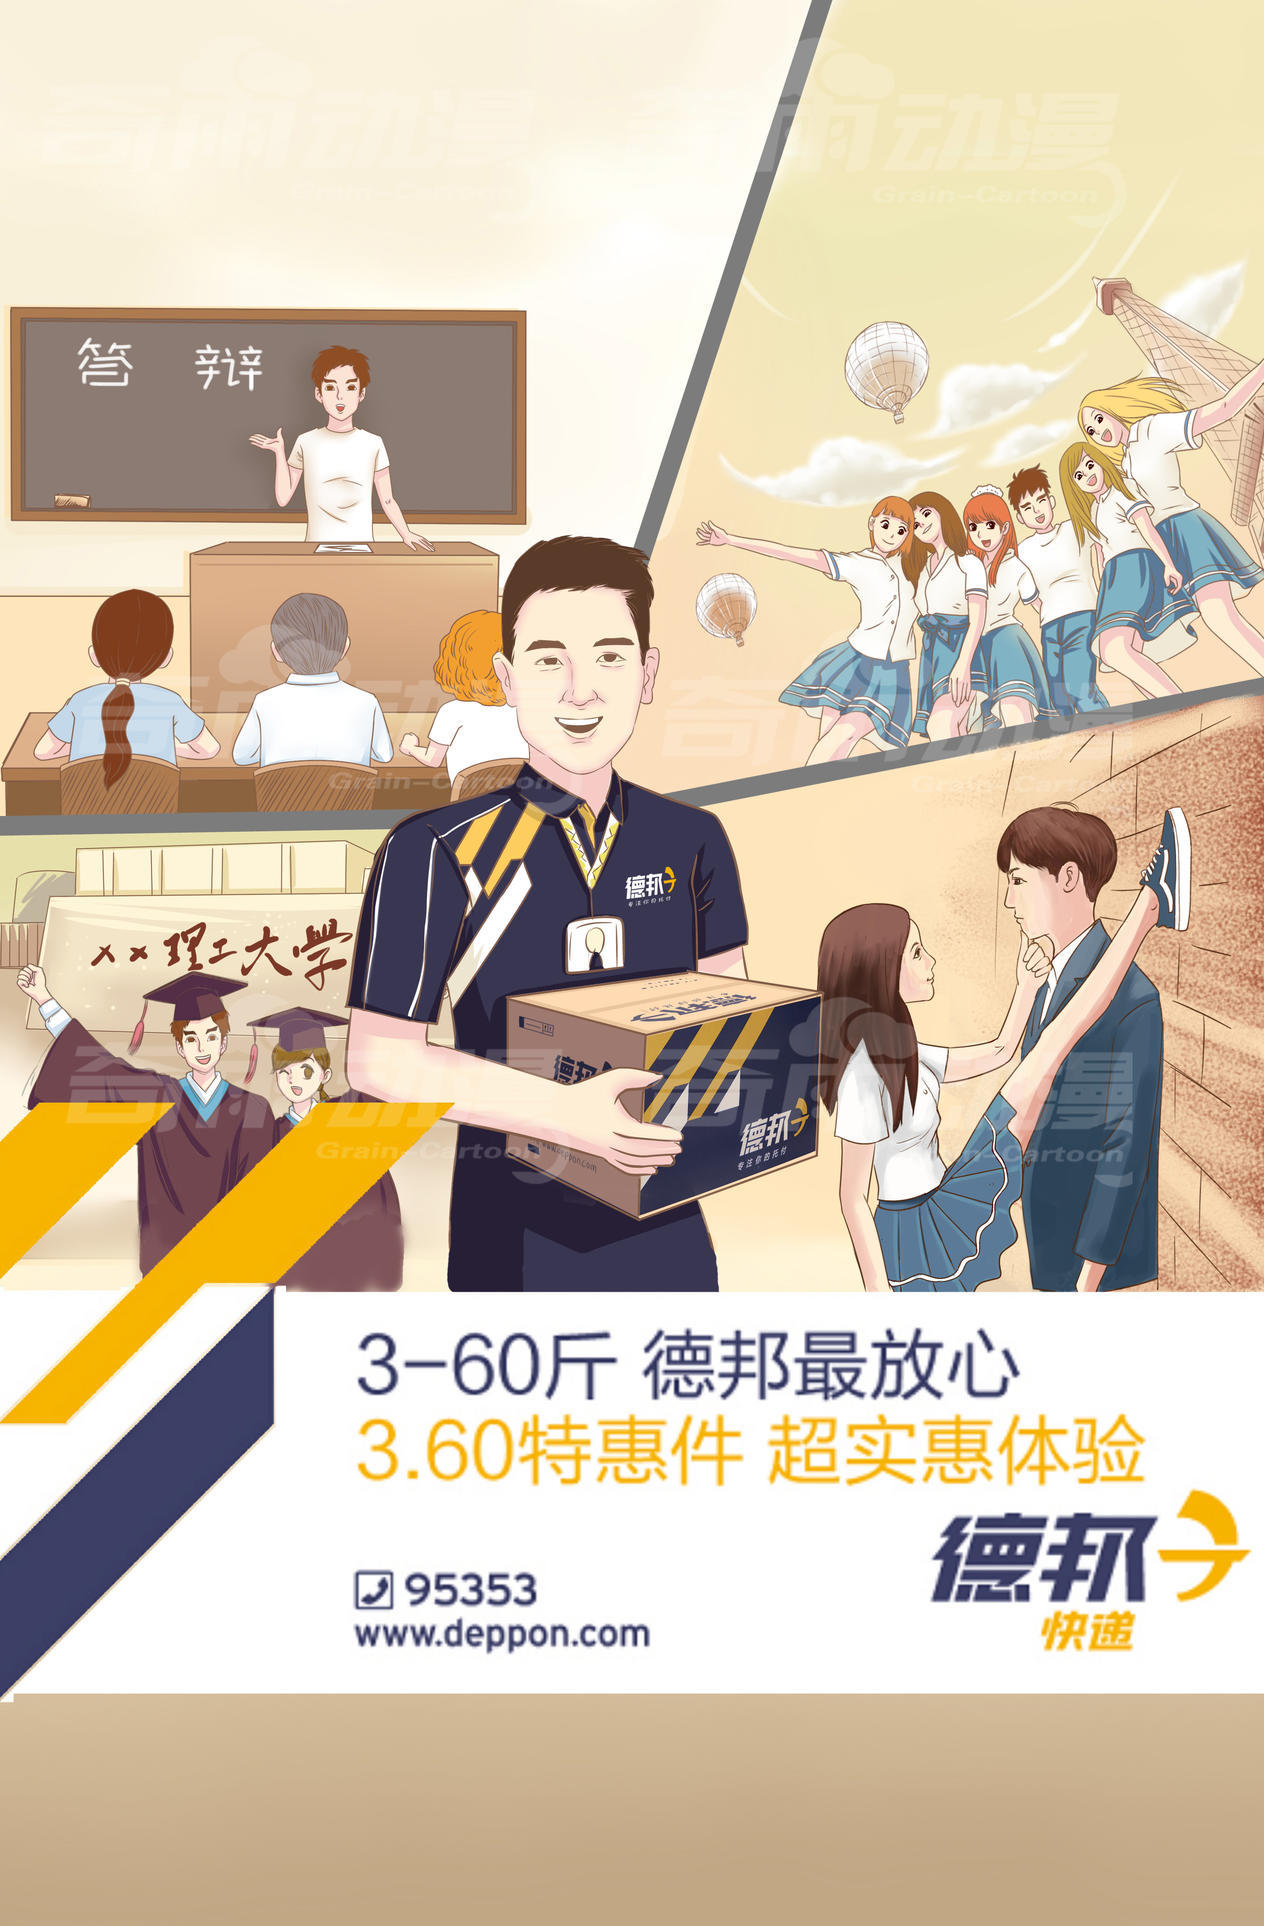 商业插画-宣传漫画-海报设计-德邦快递宣传插画图2